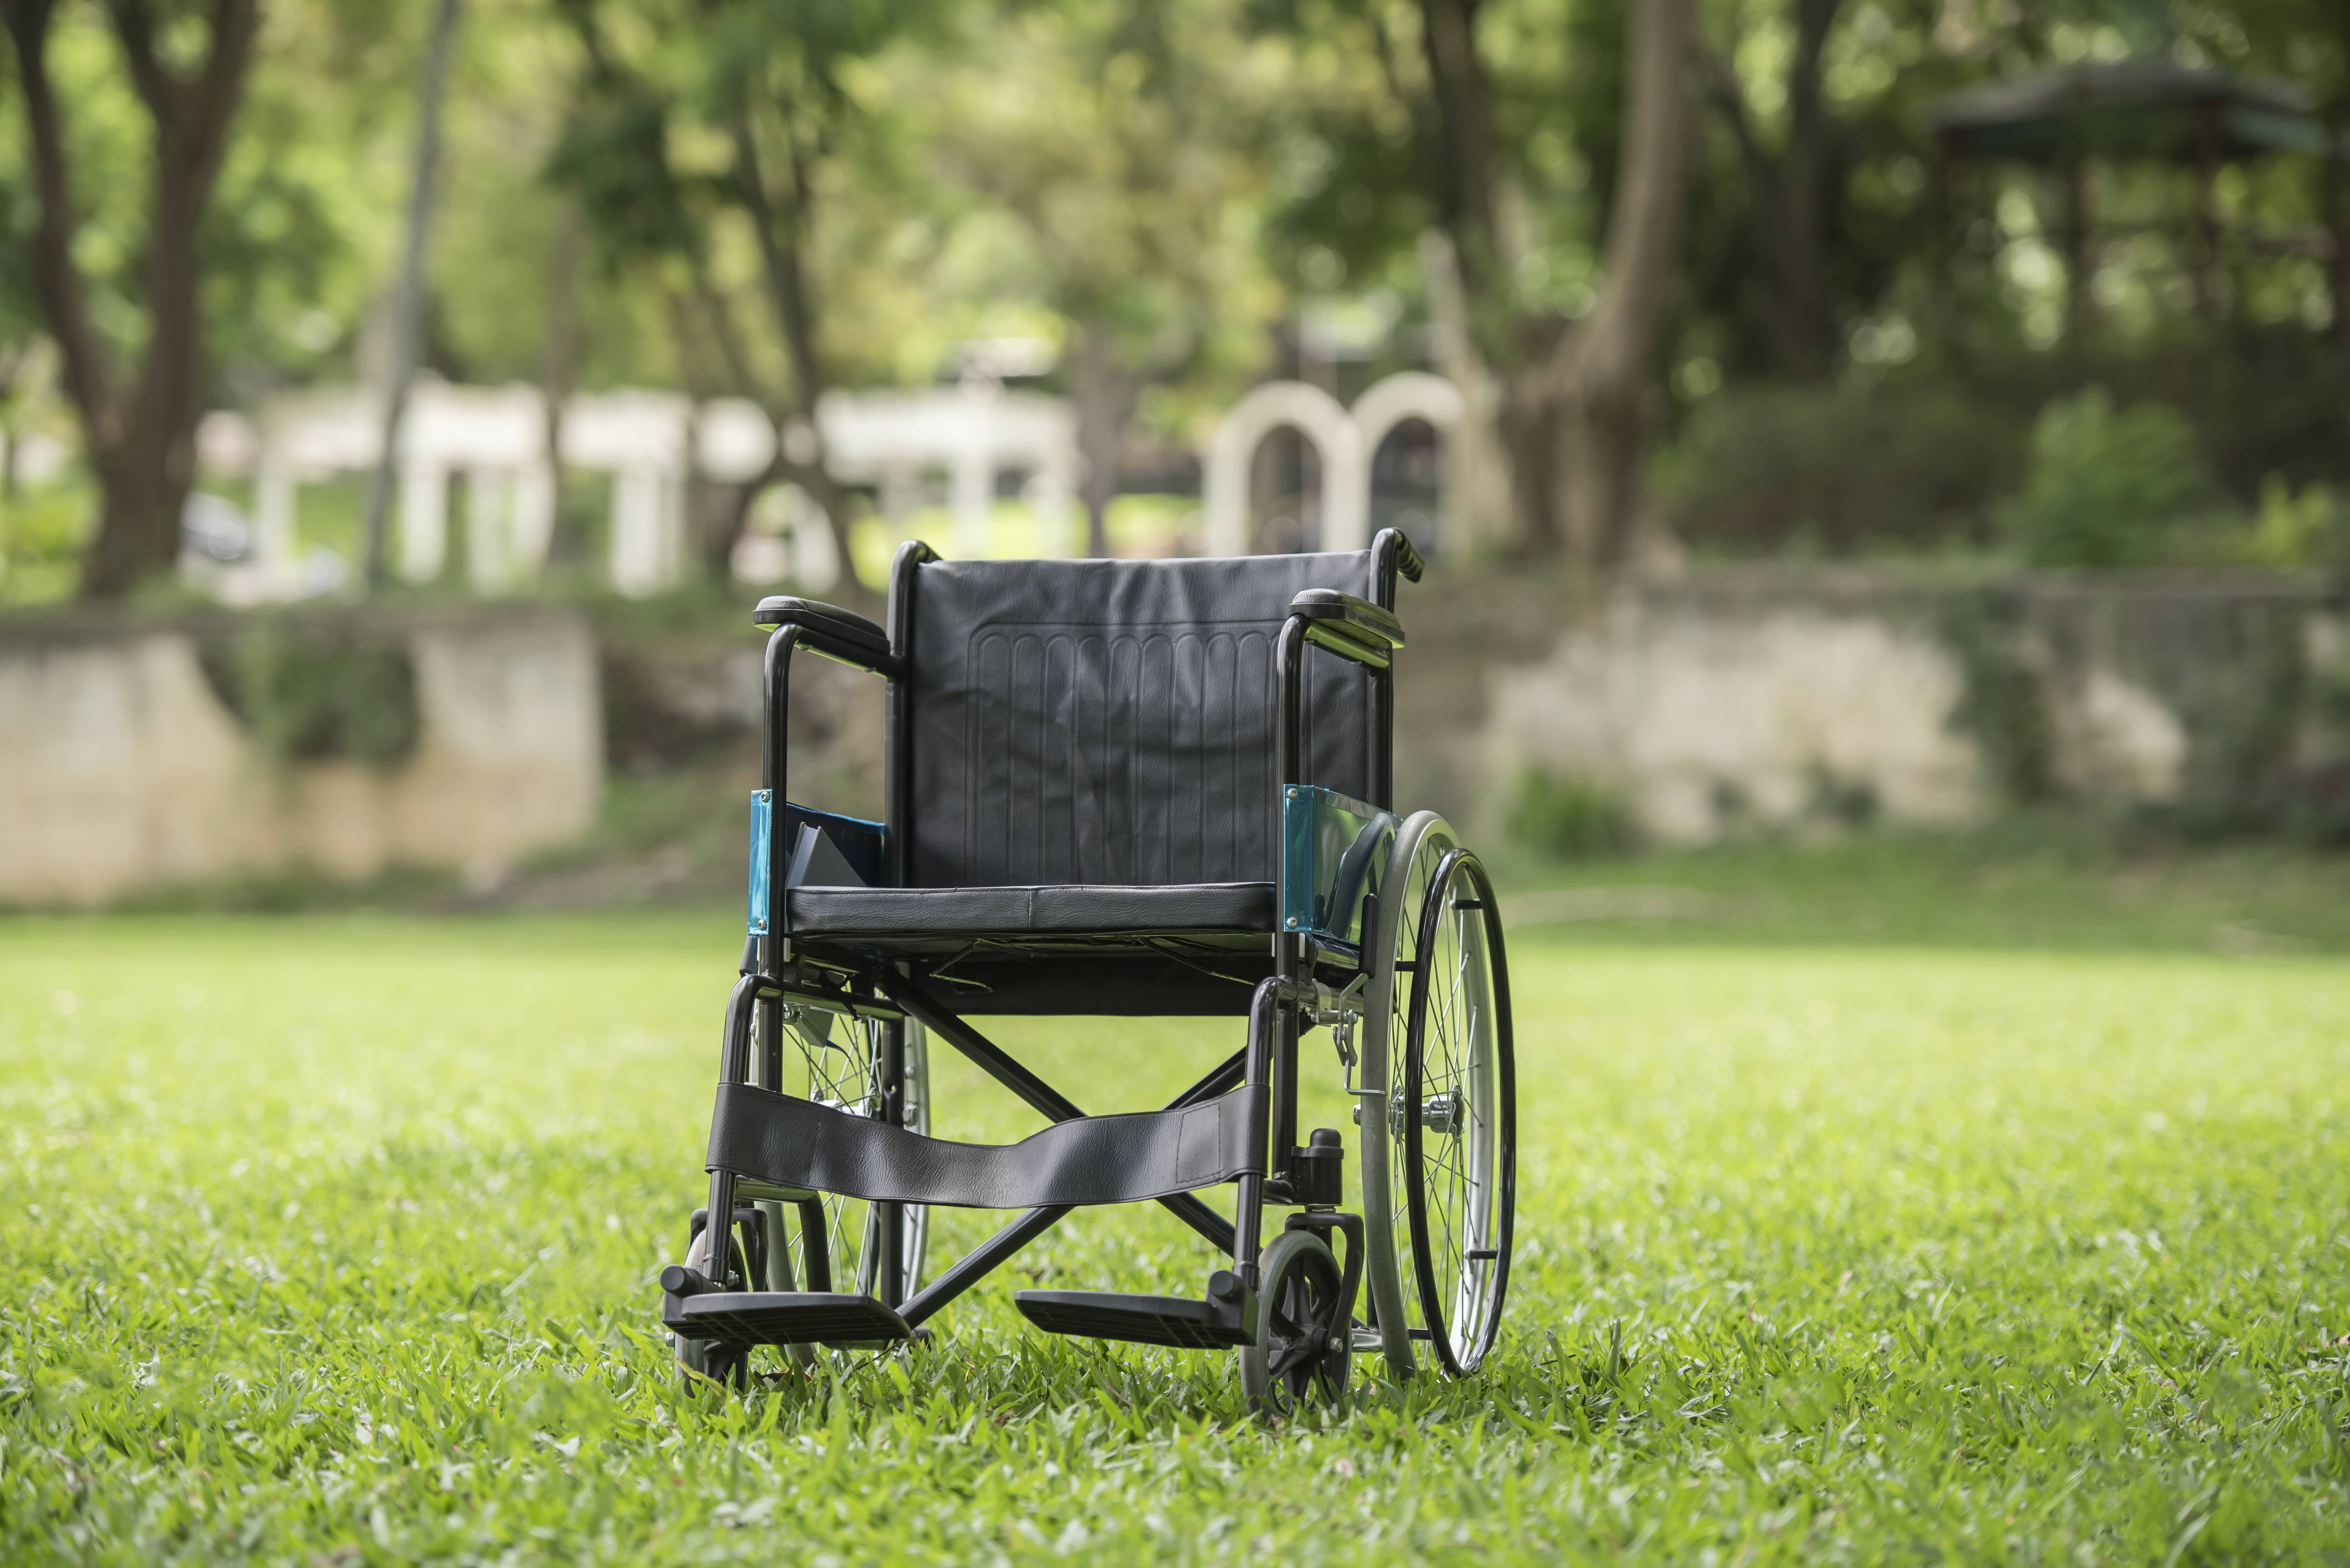 Golfi G105 Tekerlekli Sandalye: Hareket Özgürlüğünüz İçin İdeal Seçenek!